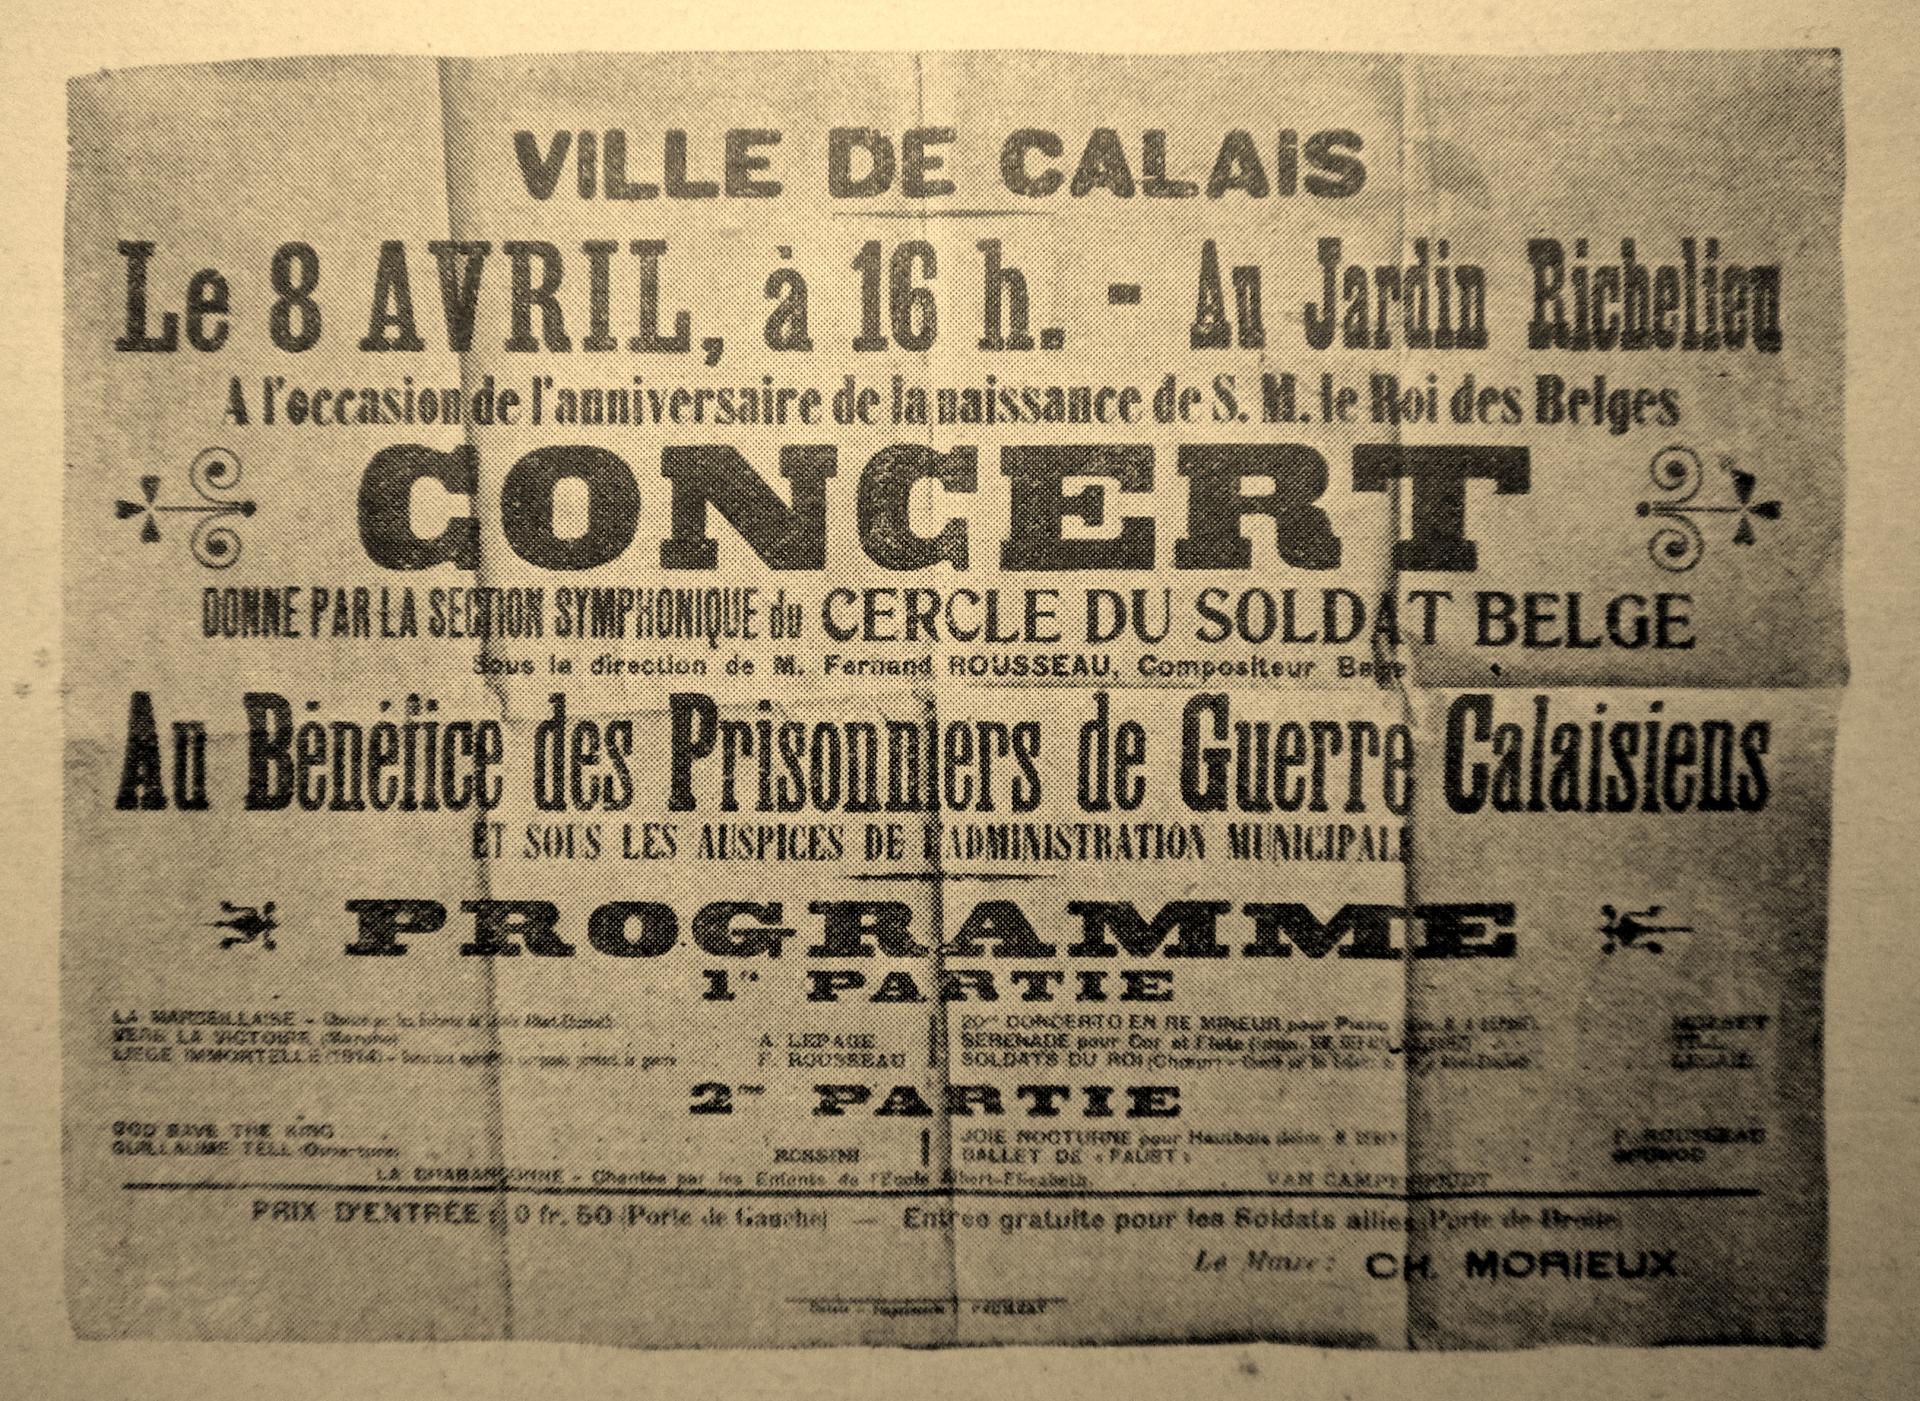 Calais 14 18 concert au benefice des prisonniers de guerre calaisiens